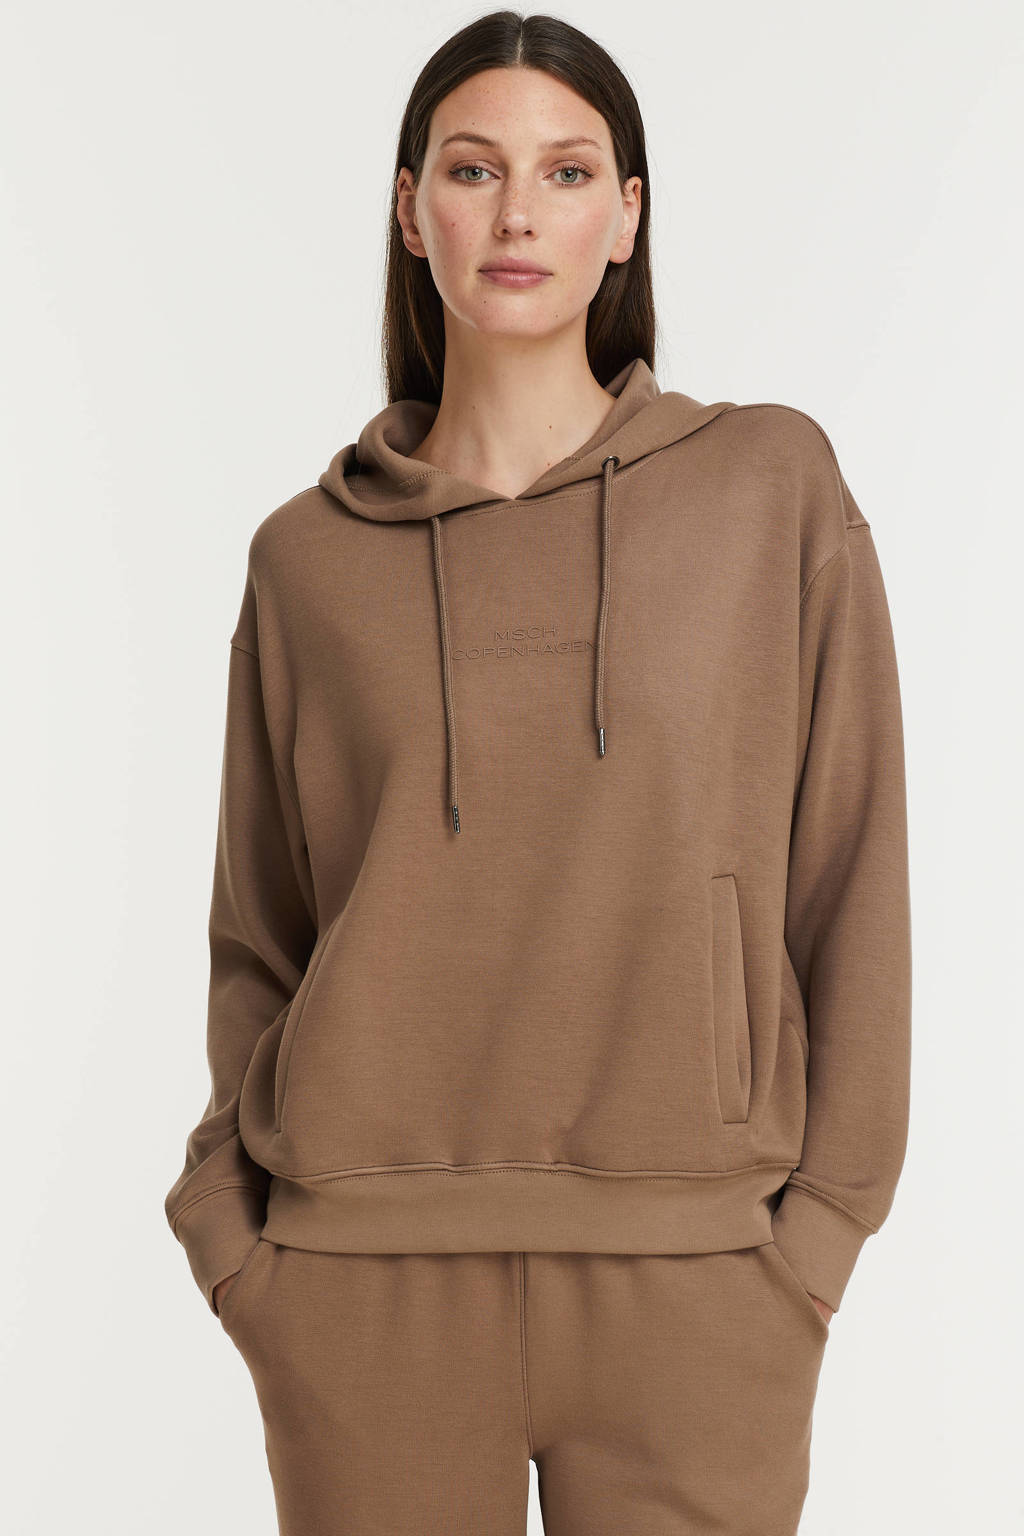 Bruine dames MSCH Copenhagen hoodie Ima van viscose met lange mouwen, capuchon en geribde boorden